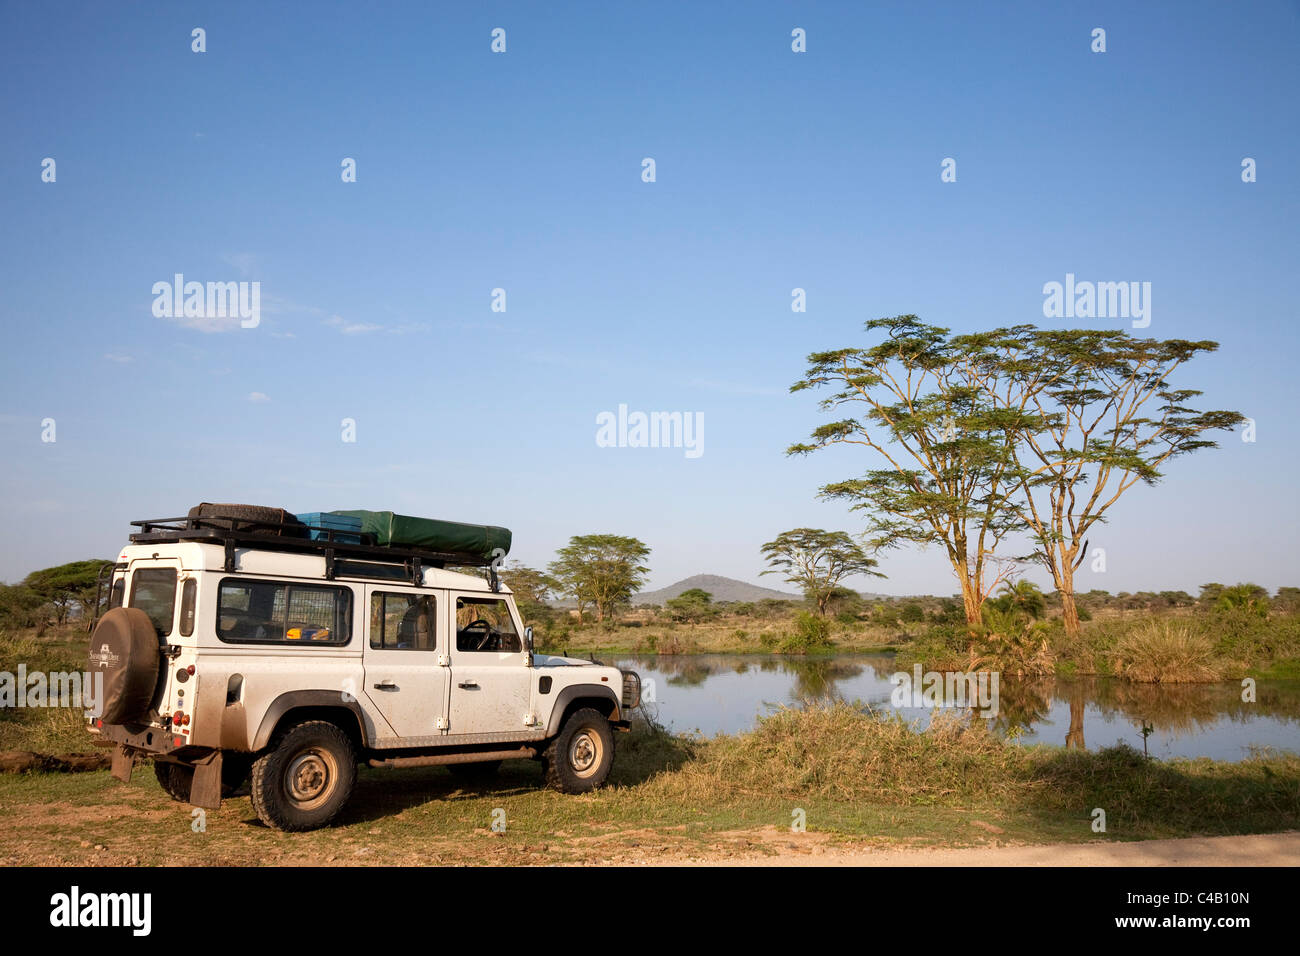 Tanzania, Serengeti. A Land Rover stops by the Seronera hippo pool. Stock Photo